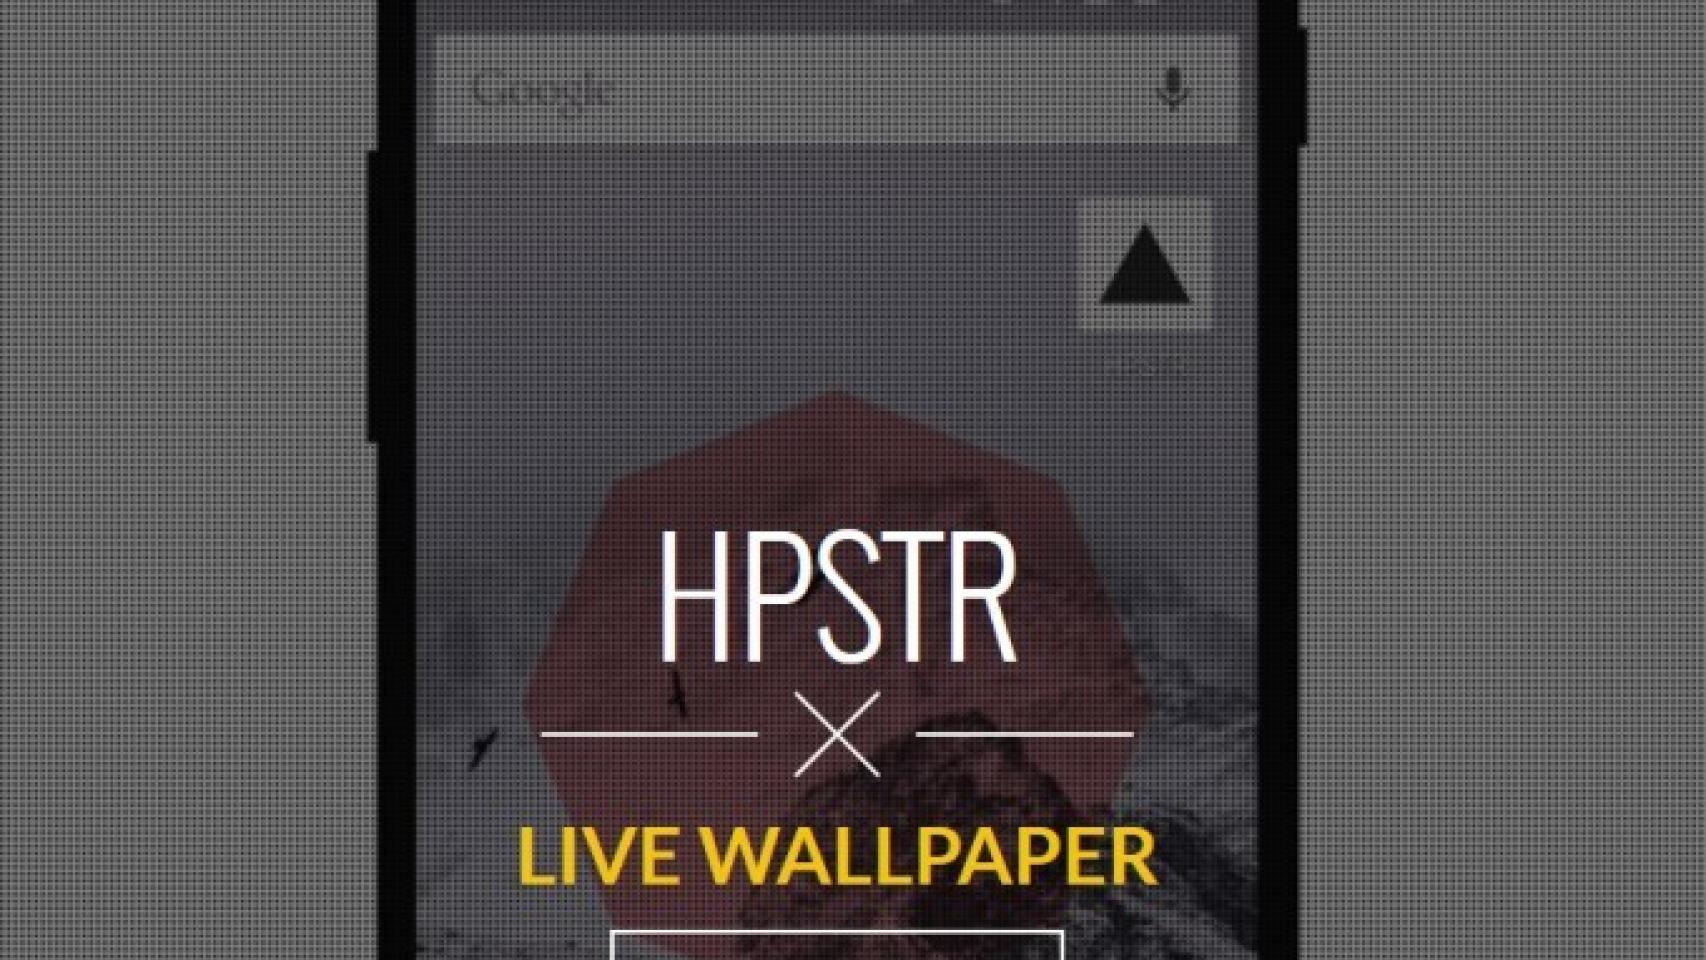 HPSTR Live wallpaper, personaliza el móvil con tu estilo hipster